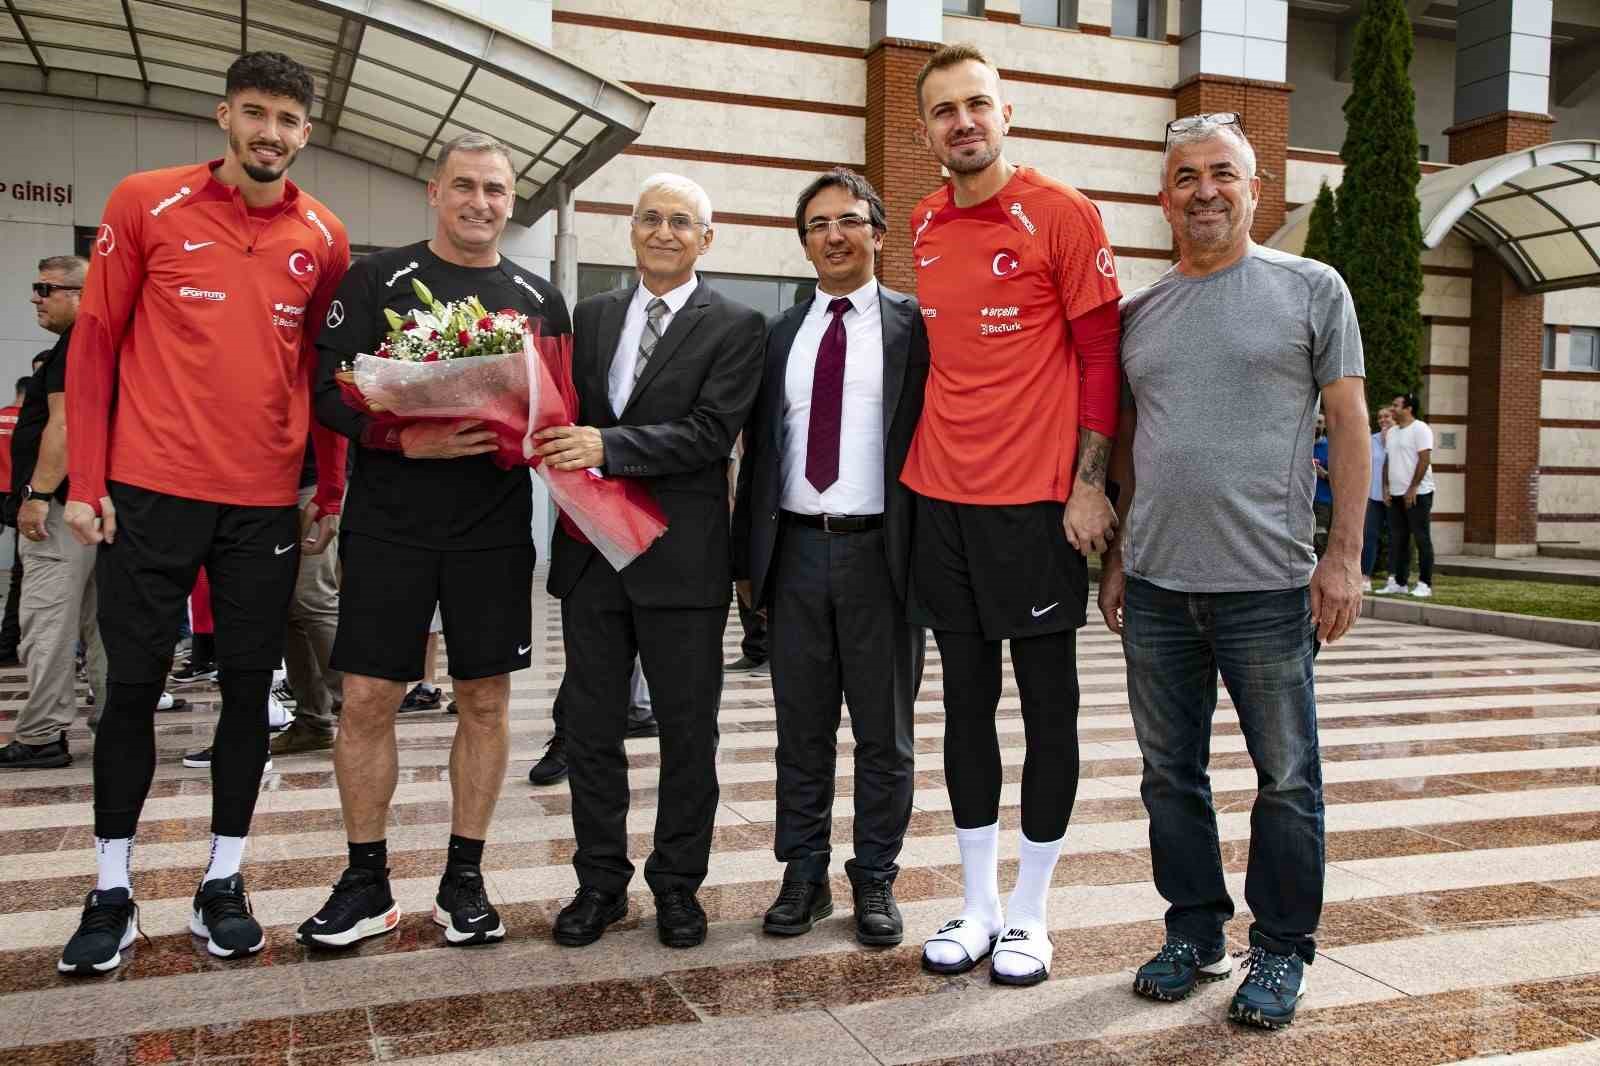 Milliler, Ermenistan maçının son çalışmasını ESTÜ Stadyumu’nda yaptı